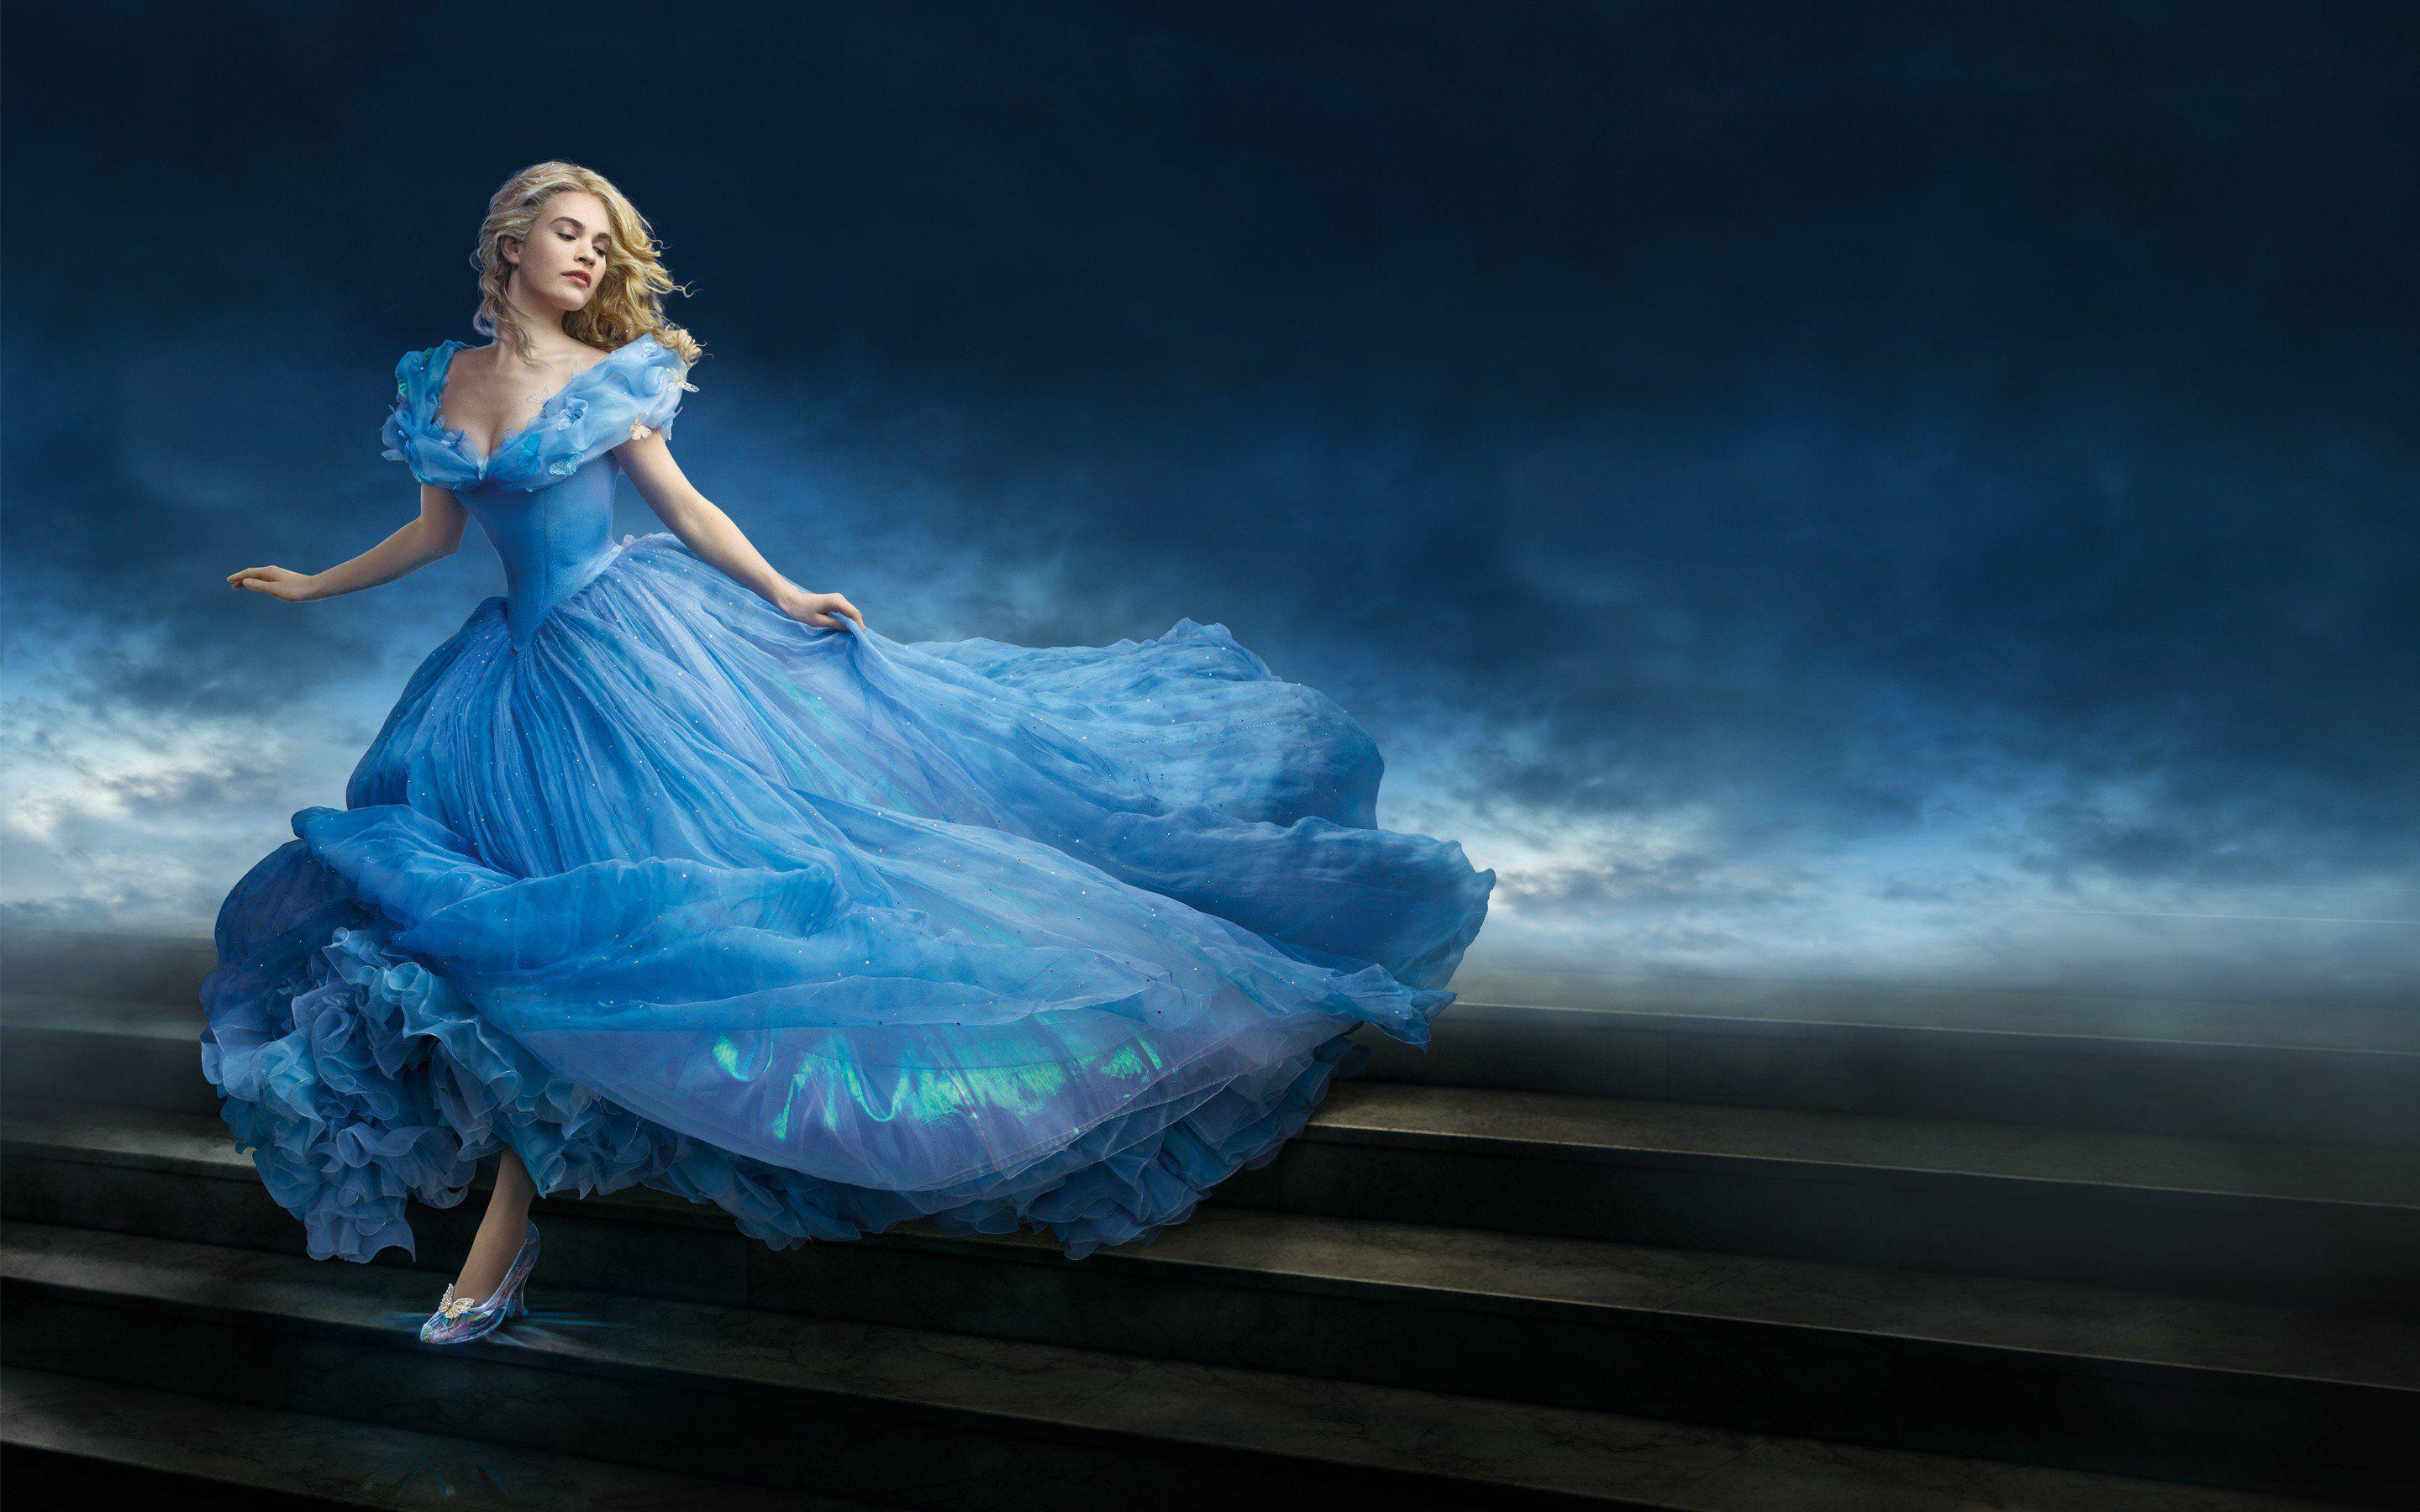 Cinderella Movie Wallpaper Background 52213 2880x1800 px